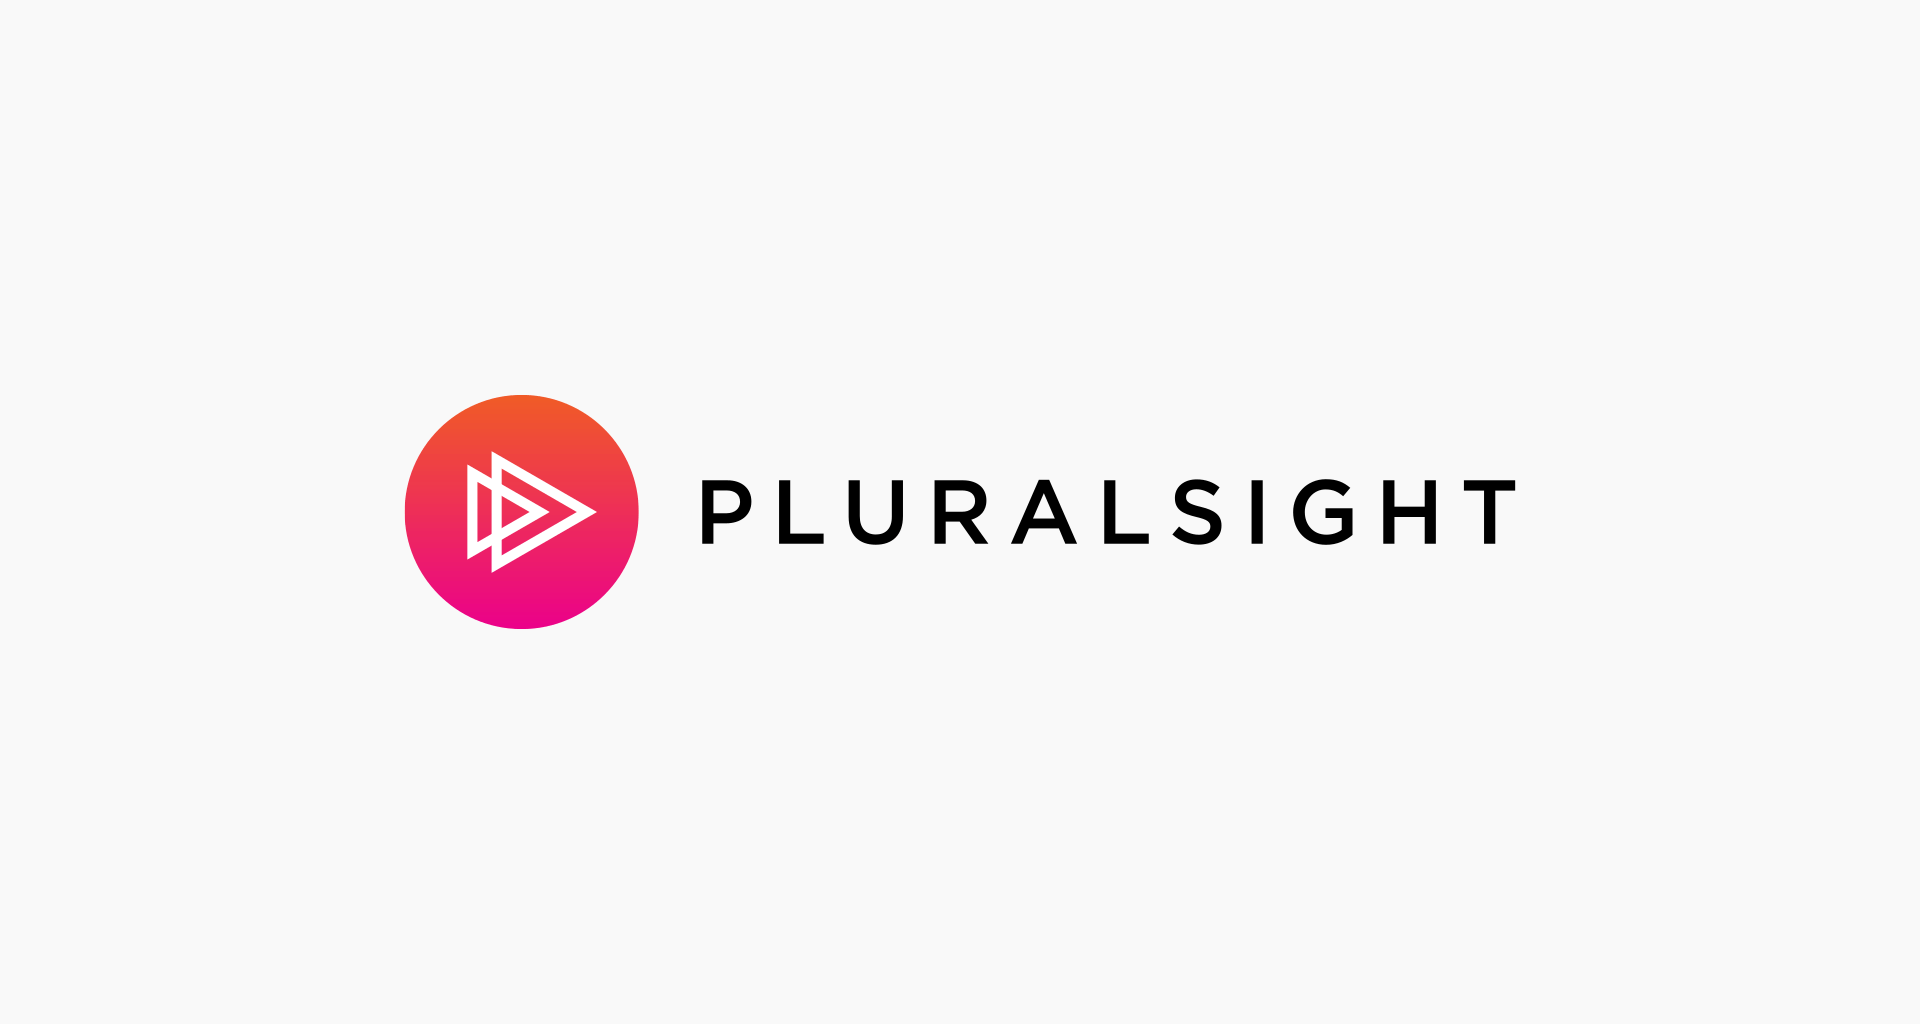 pluralsight yüksek çözünürlüklü görsel, pluralsight hd logo, pluralsight logo hd